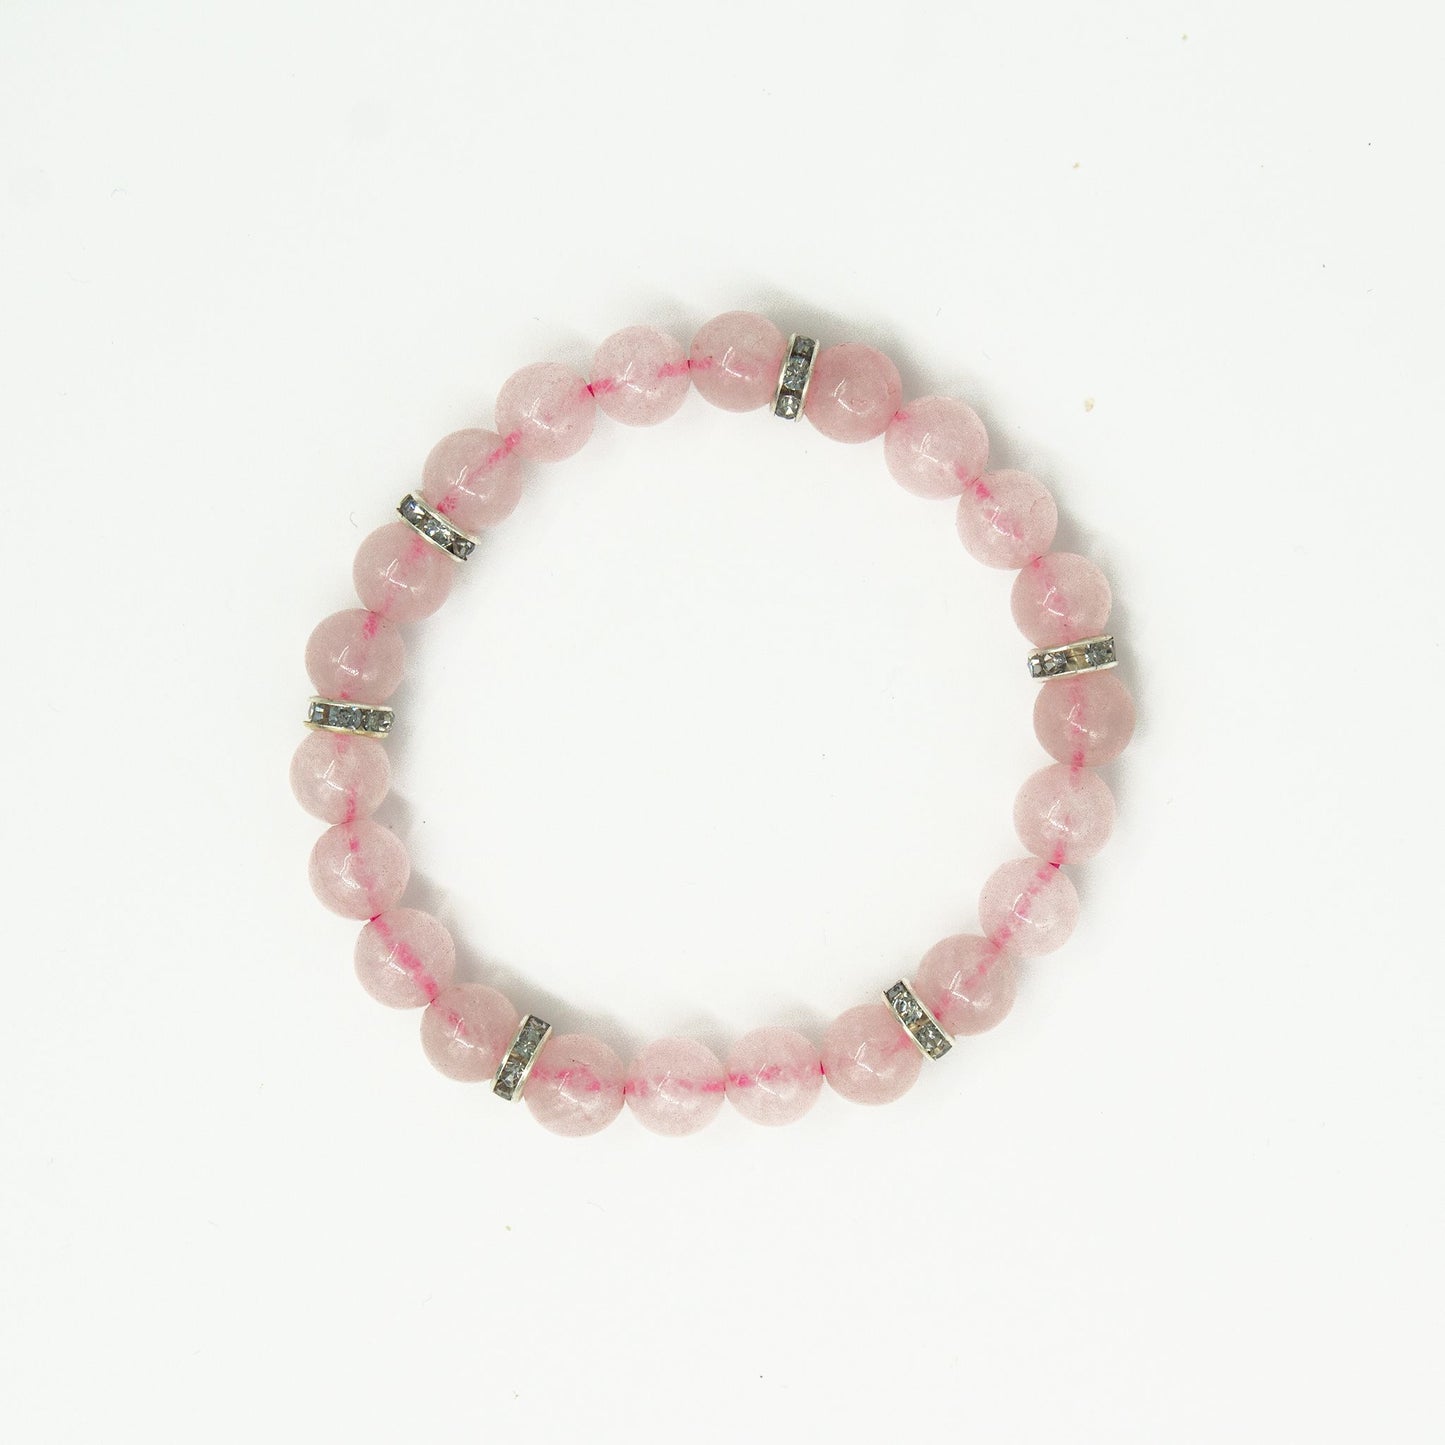 rose quartz bracelet with charm rakhi gift